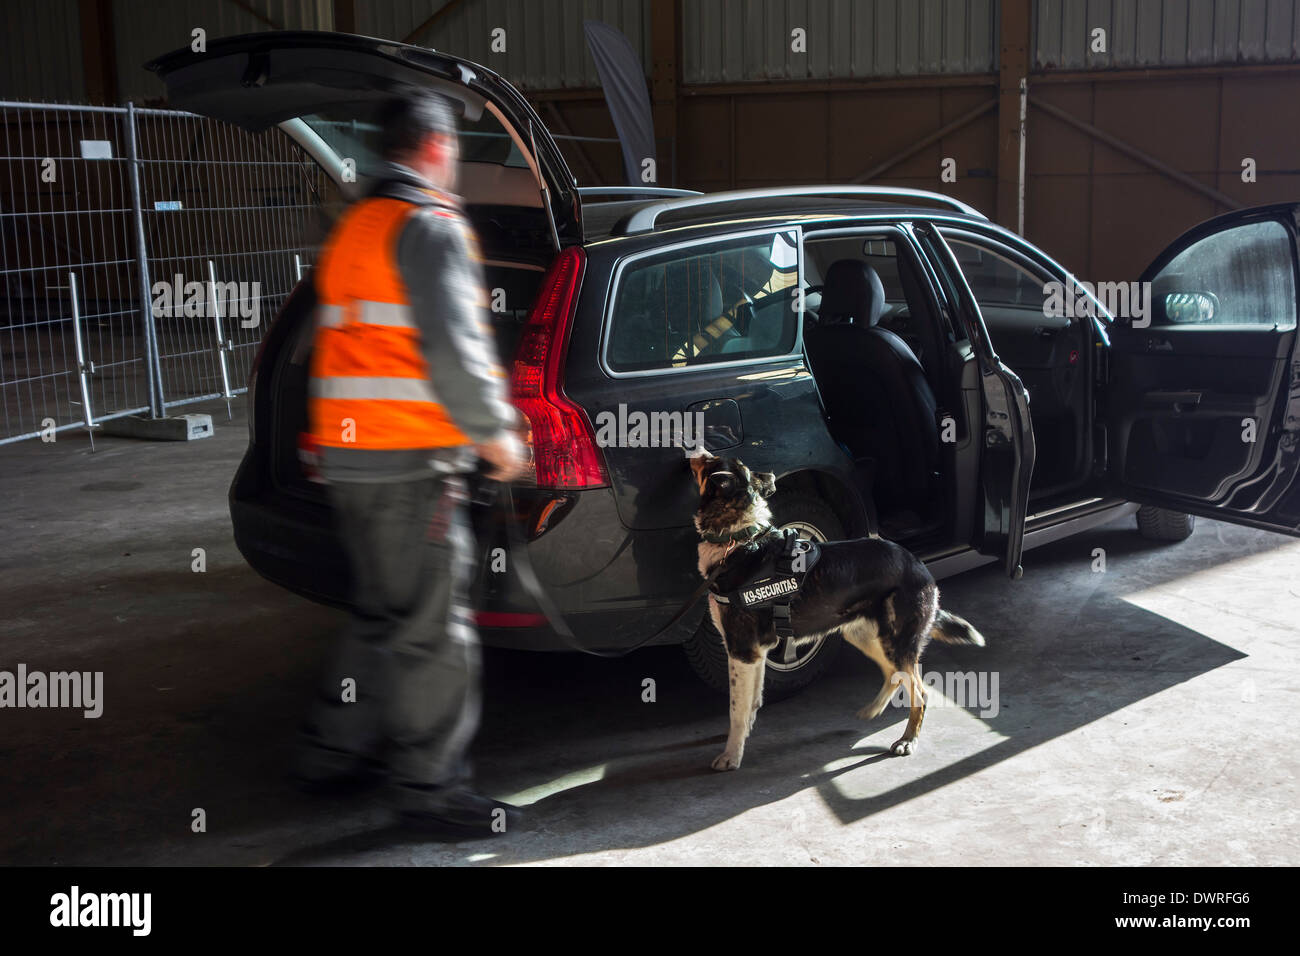 Coche está buscando explosivos y drogas por handler con perros detectores de explosivos de la Securitas K9 equipo de detección de explosivos Foto de stock